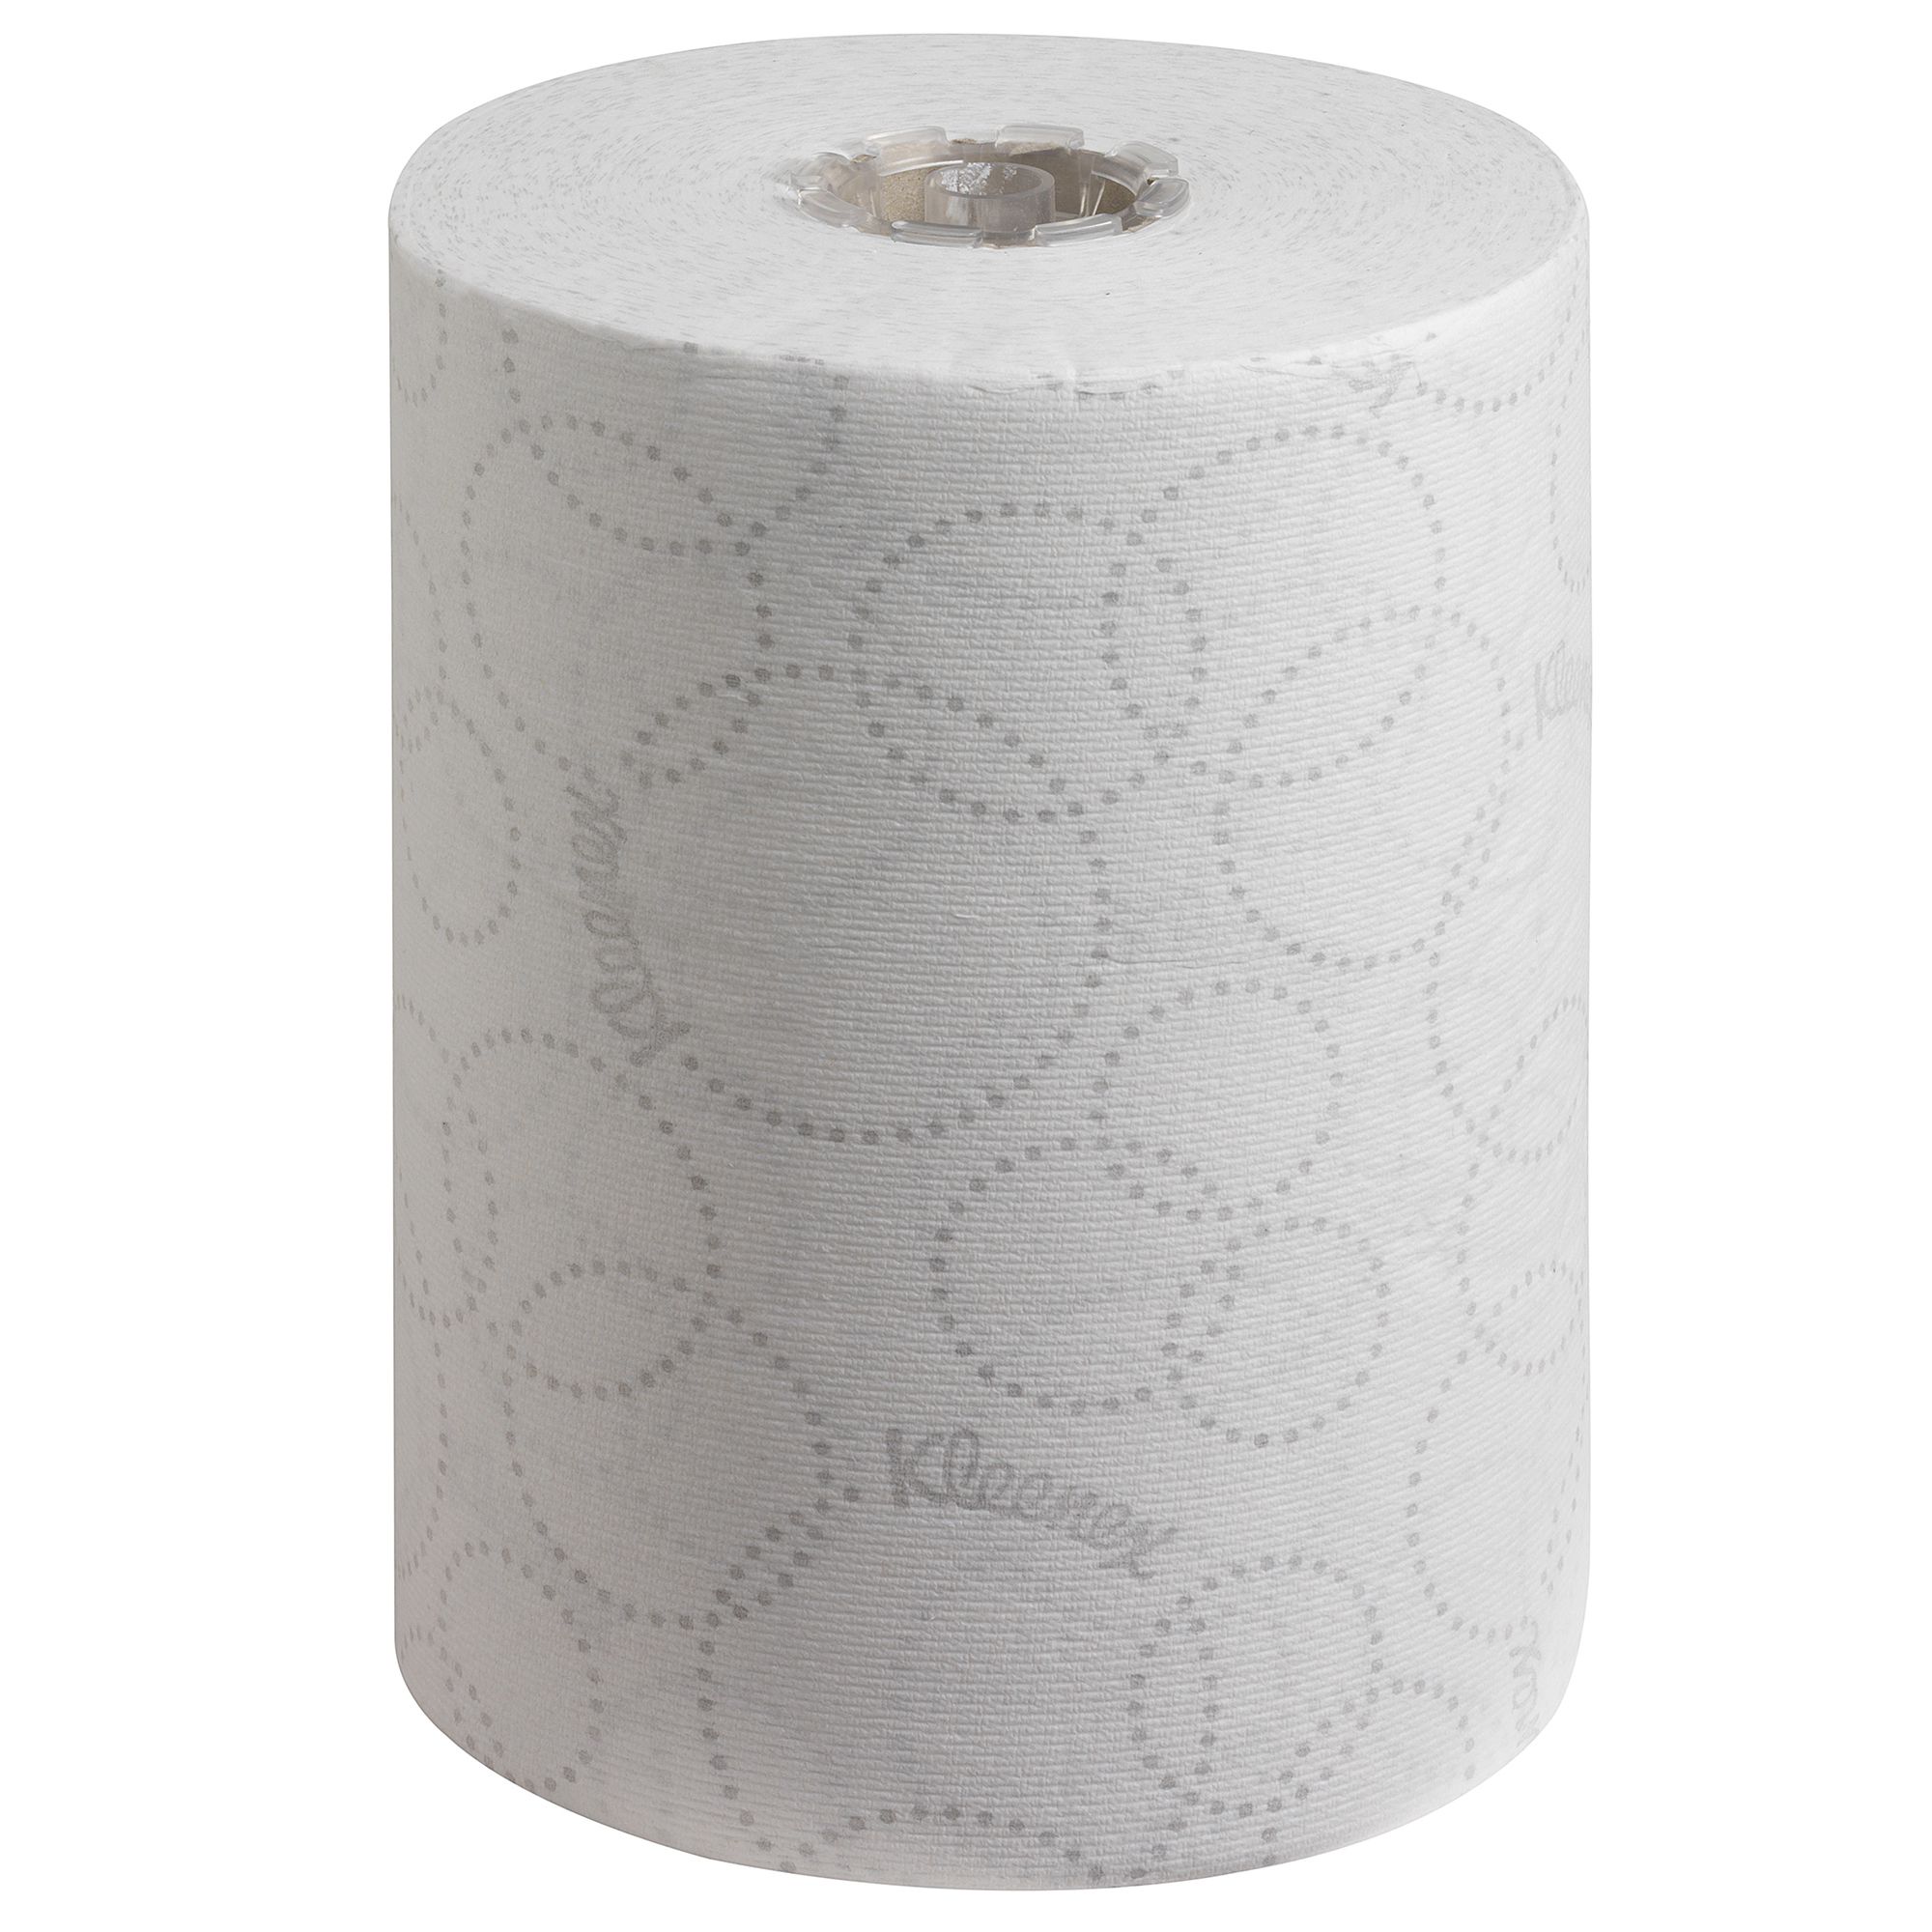 Рулонное полотенце купить. 7955 Диспенсер для рулонных полотенец Aquarius Slimroll белый. Полотенца Клинекс. Бумажные полотенца в рулонах. Бумажные полотенца однослойные.